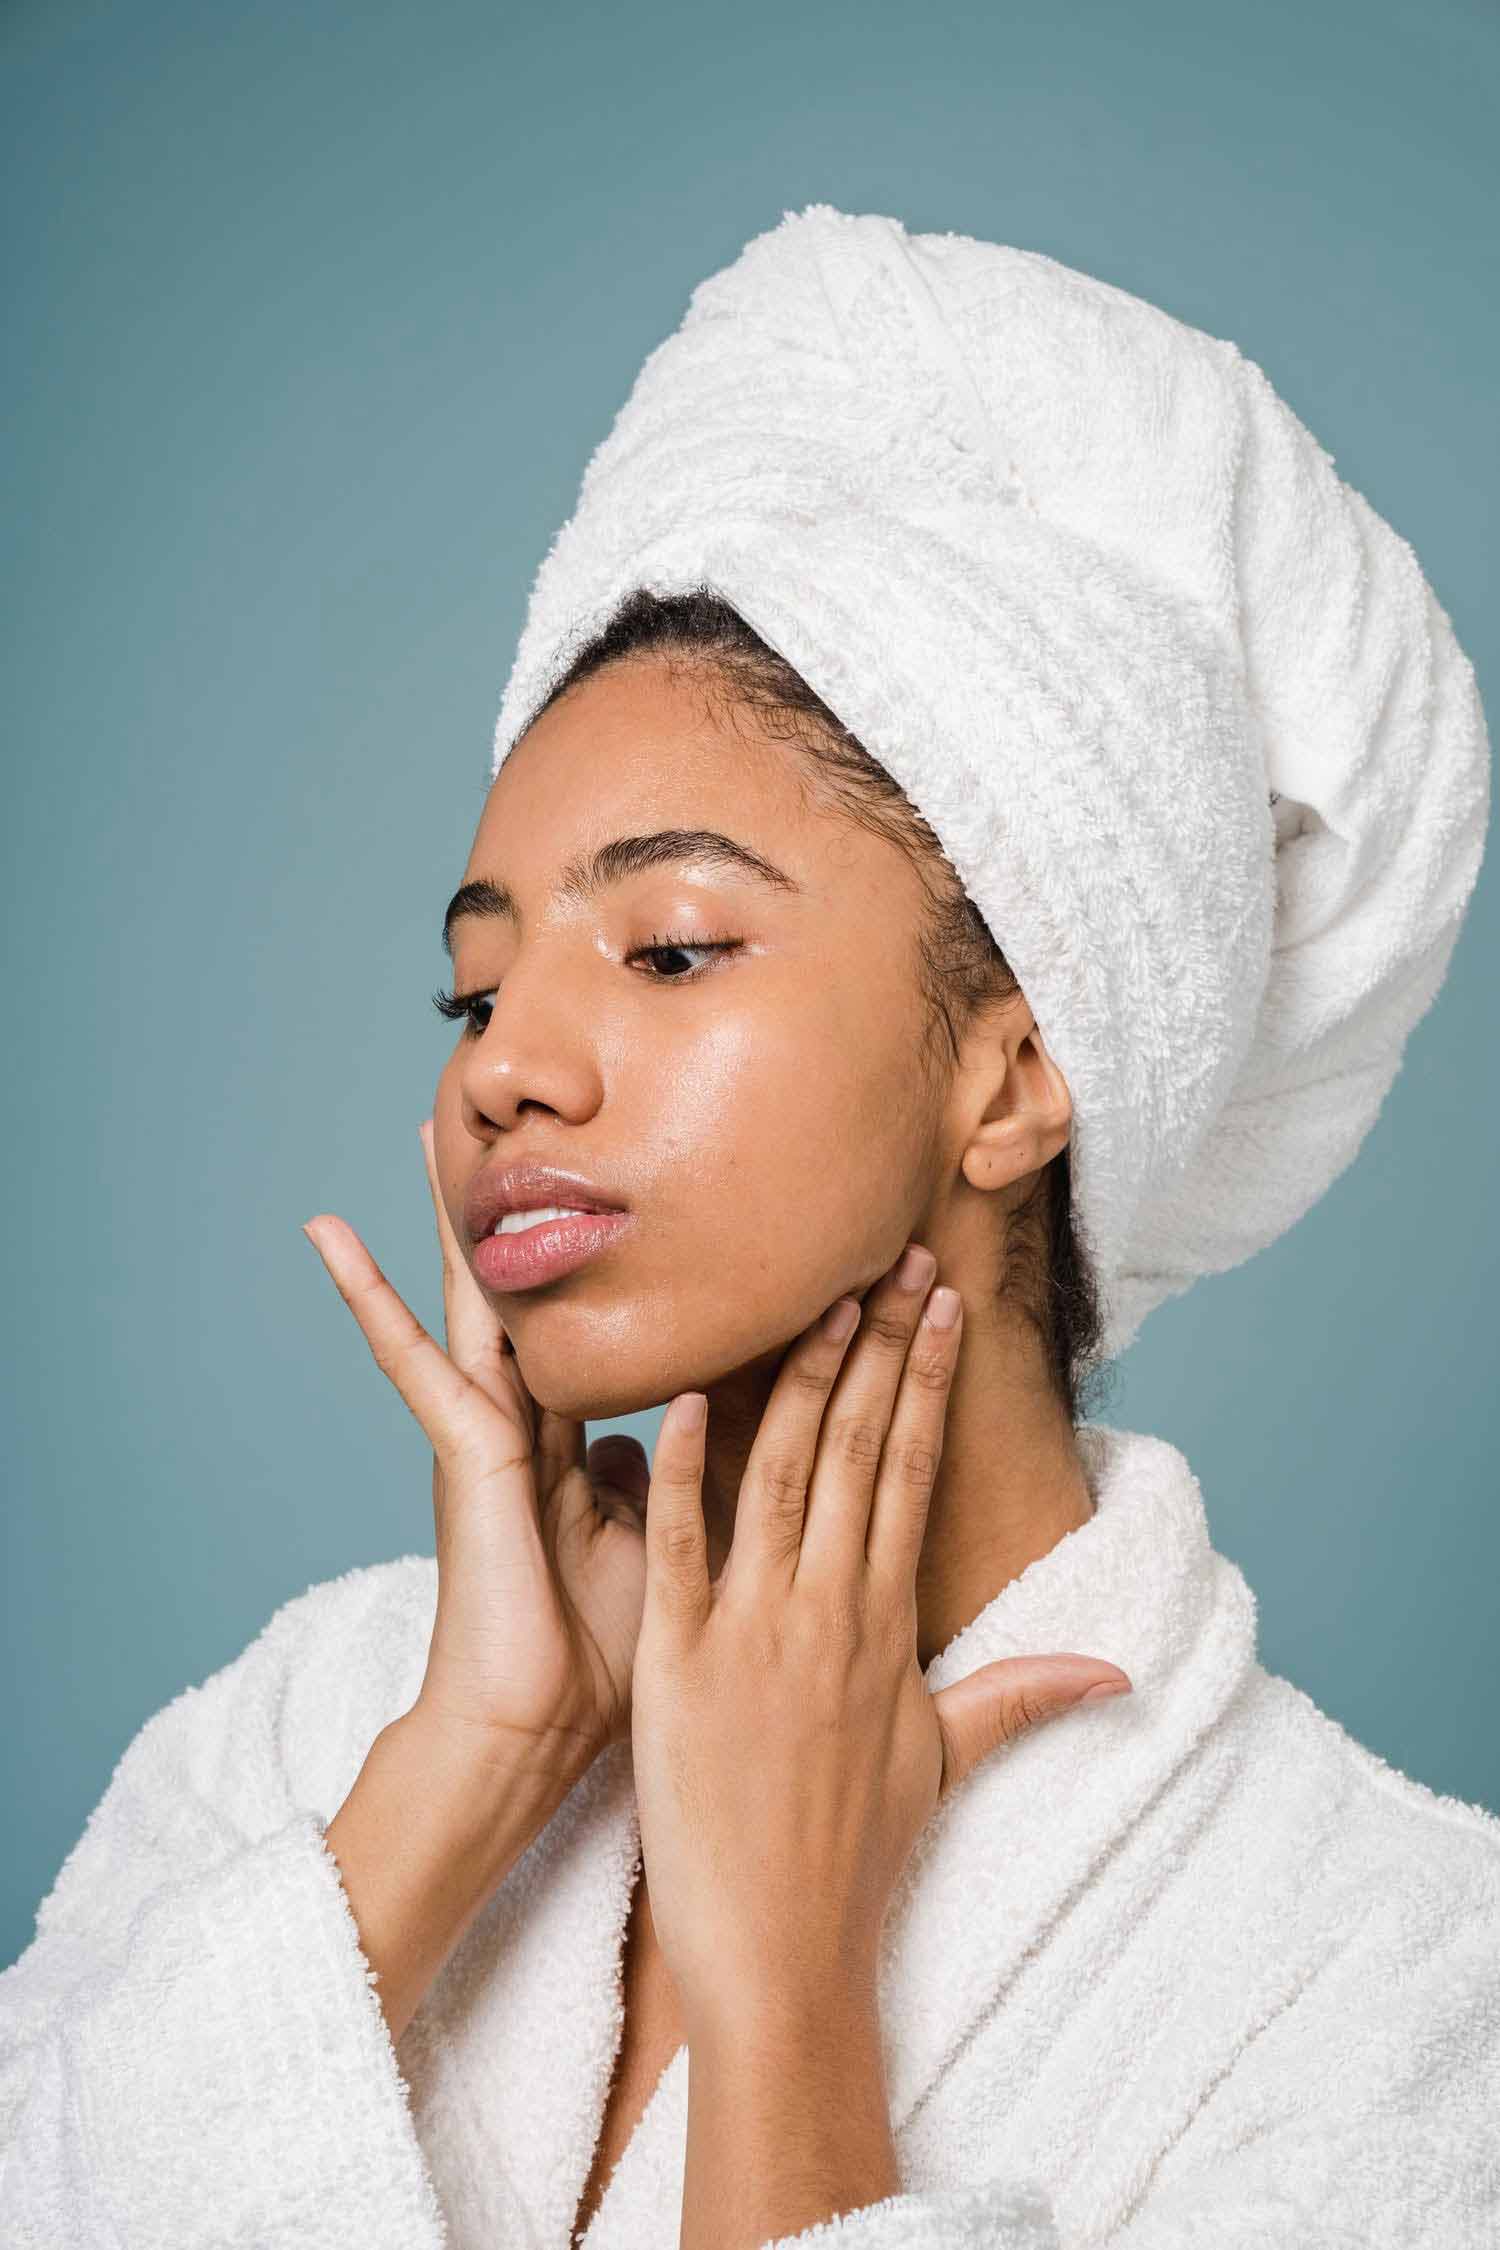 Pourquoi mettre de l’huile sur la peau de son visage diminue l’efficacité de nos crèmes et soins ?